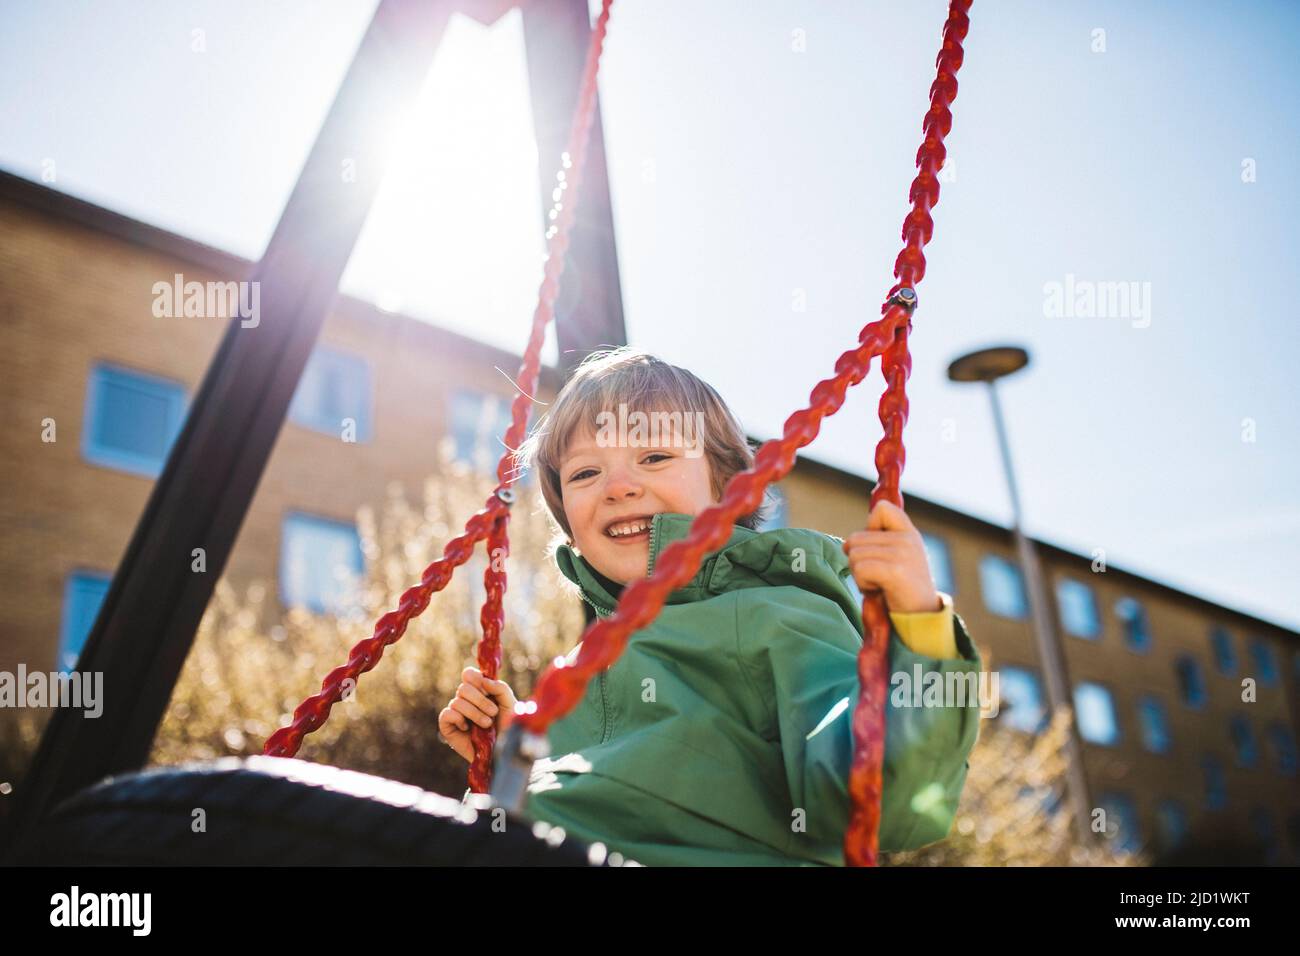 Chico sonriente en swing Foto de stock